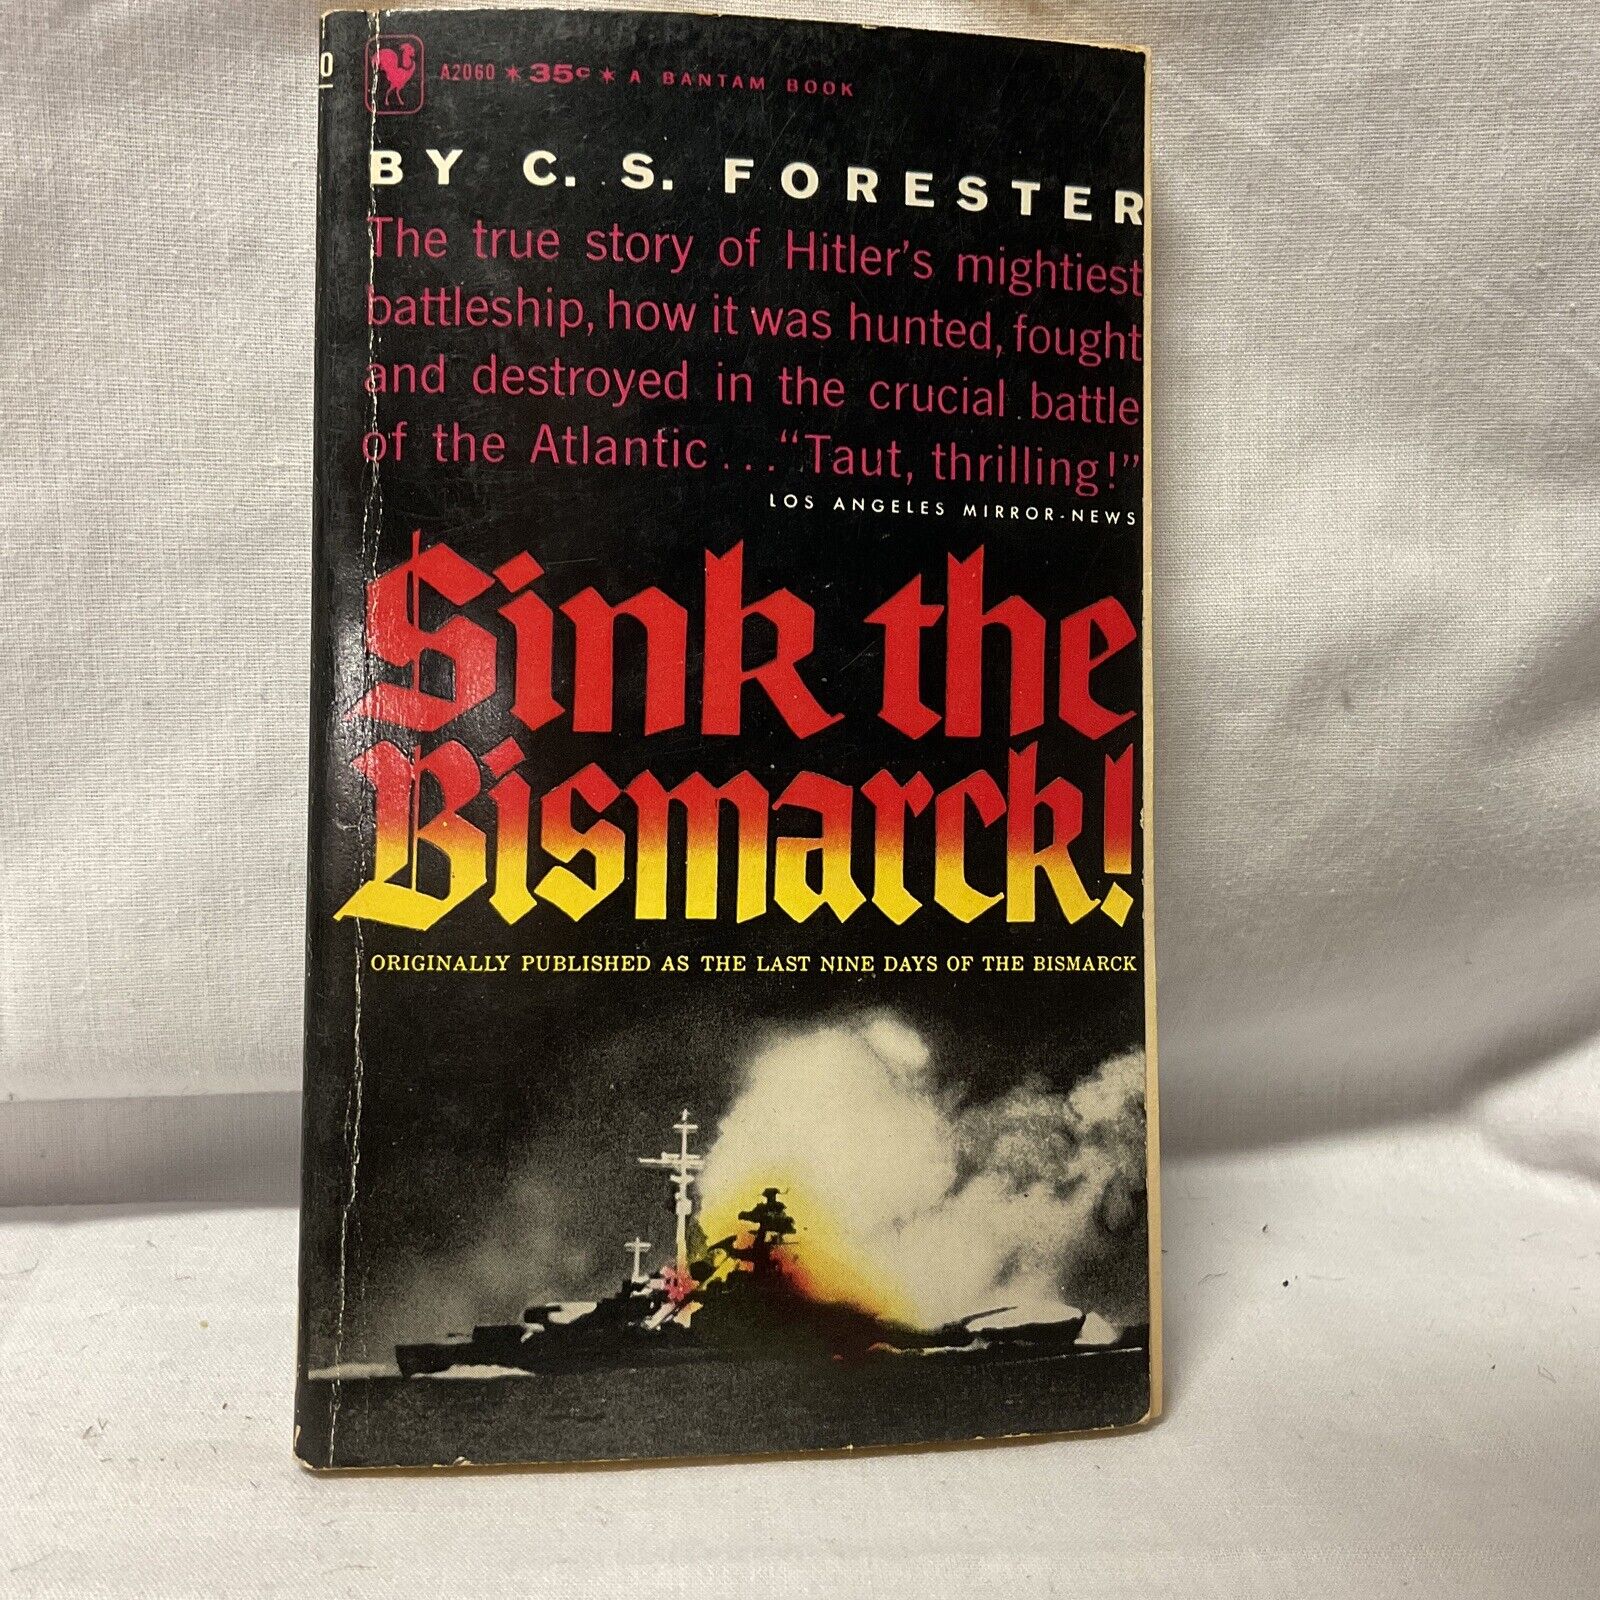 Sink the Bismark war book copyrite 1959